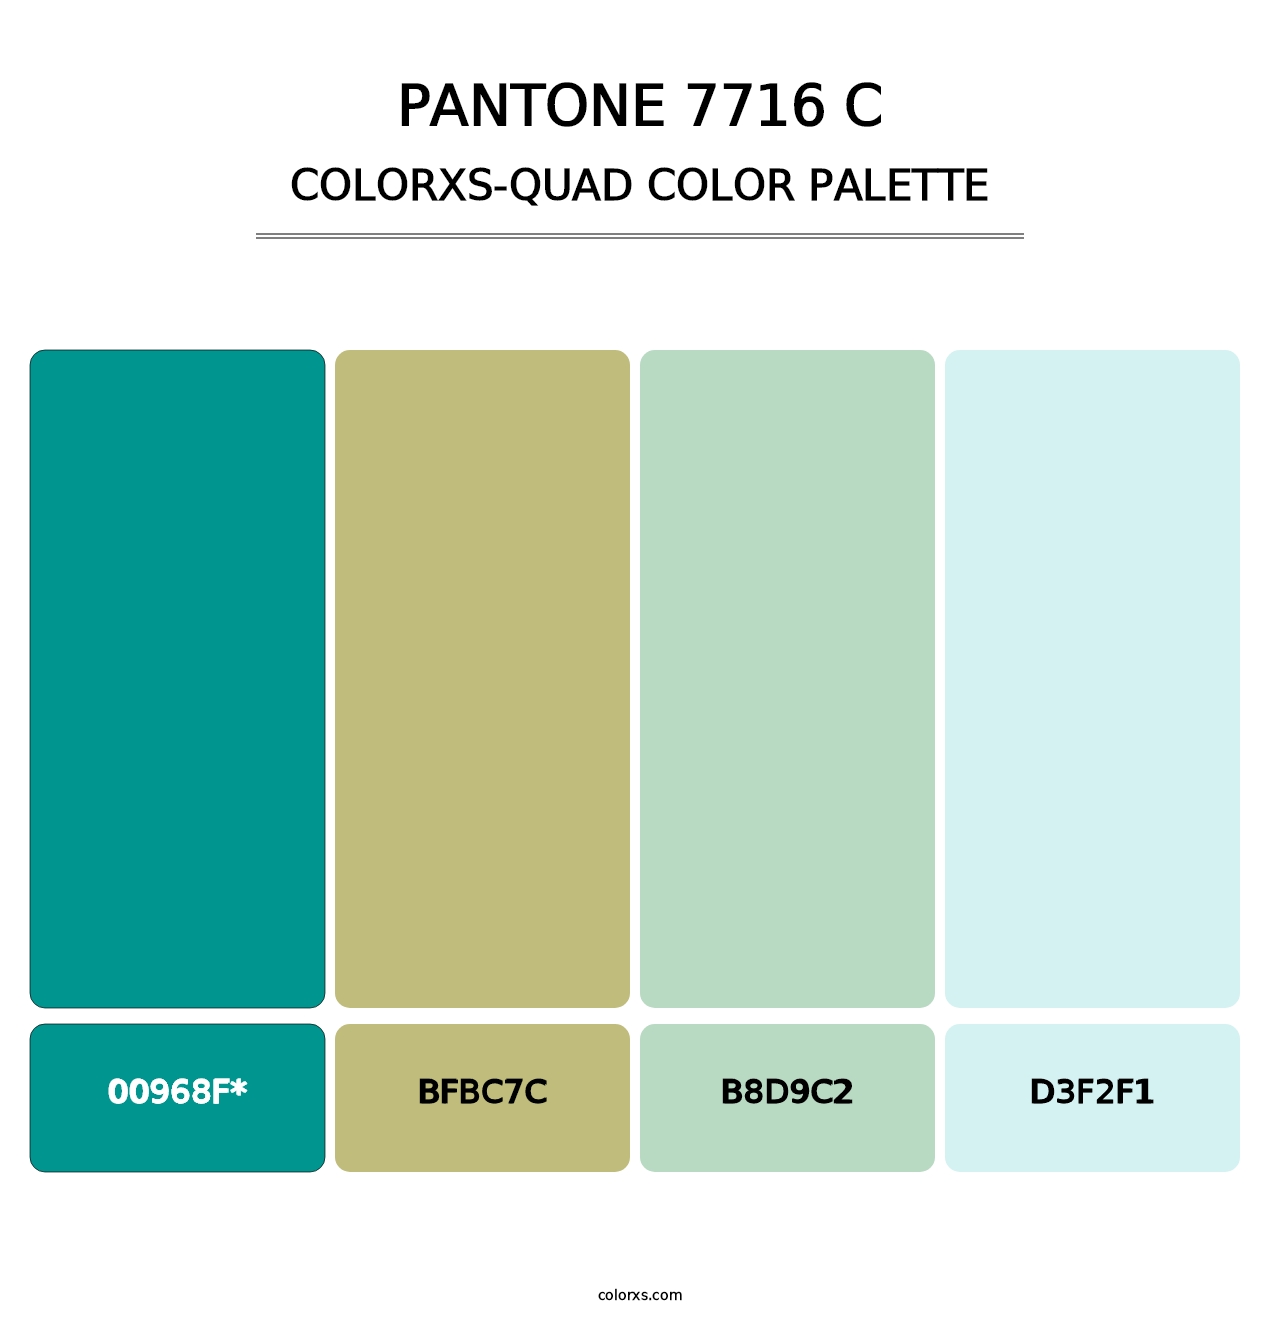 PANTONE 7716 C - Colorxs Quad Palette